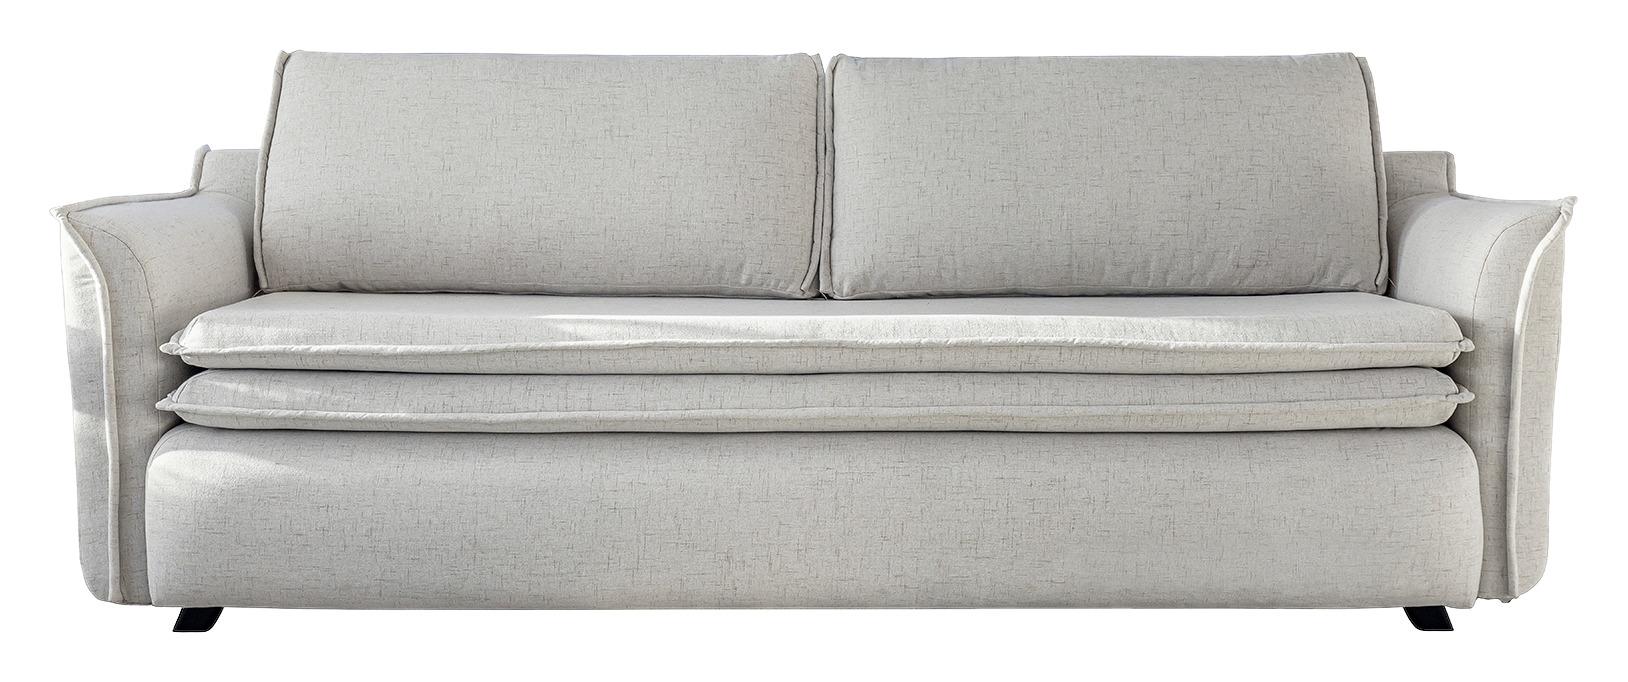 Dreisitzer-Sofa mit Bettfunkt. Charming Charlie, Webstoff